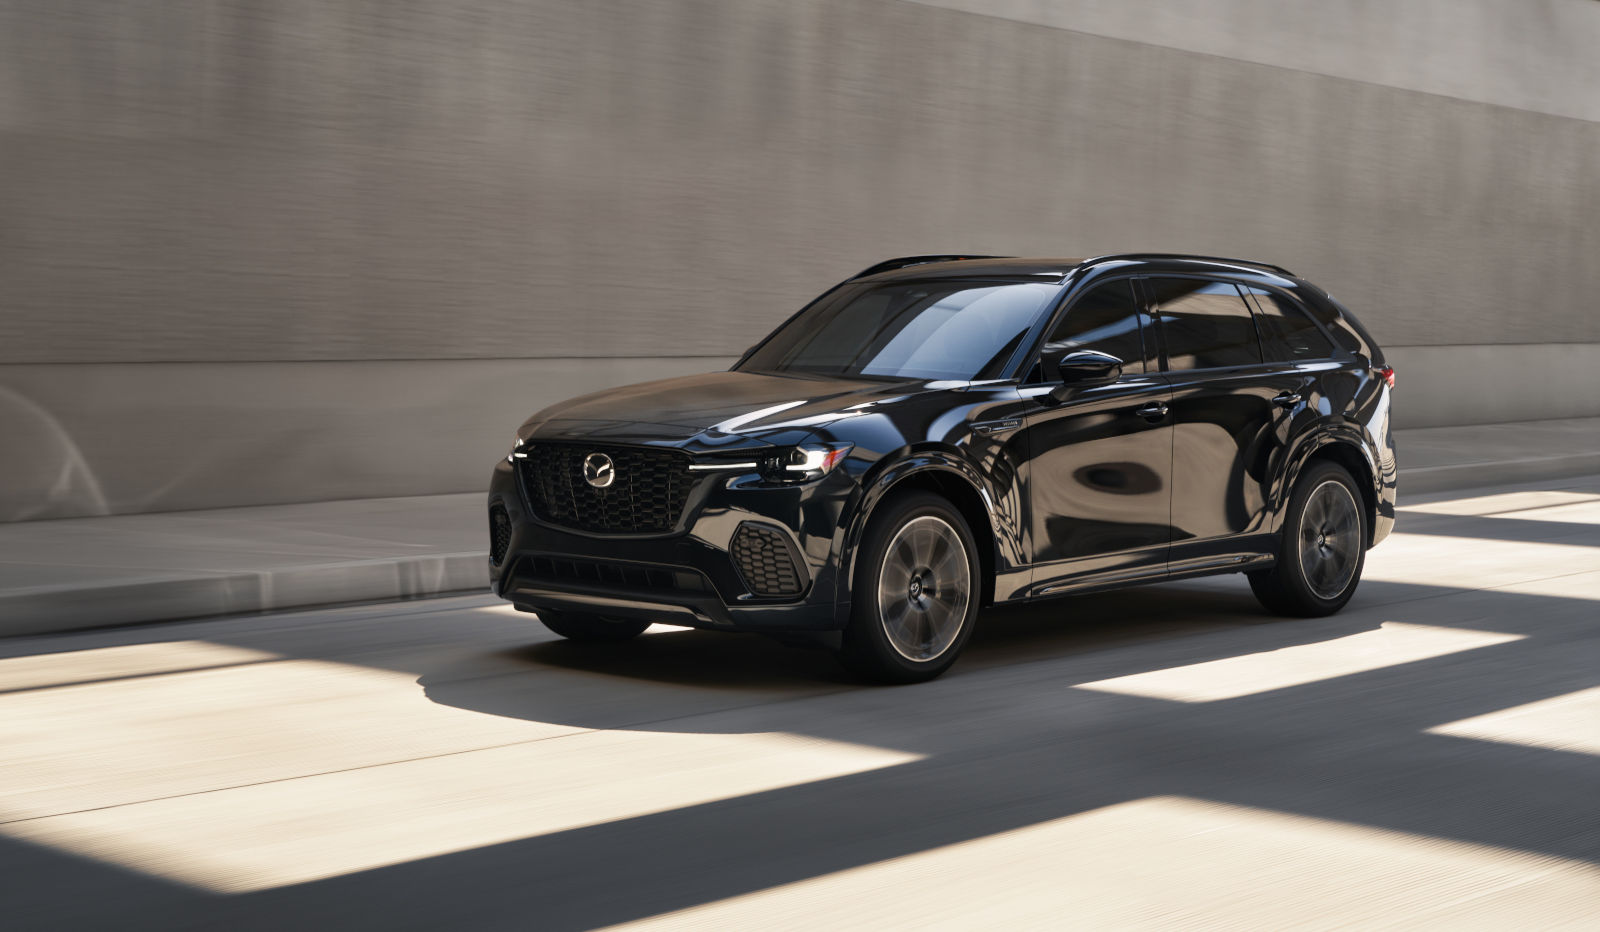 Voici notre premier regard au nouveau Mazda CX-70 2025